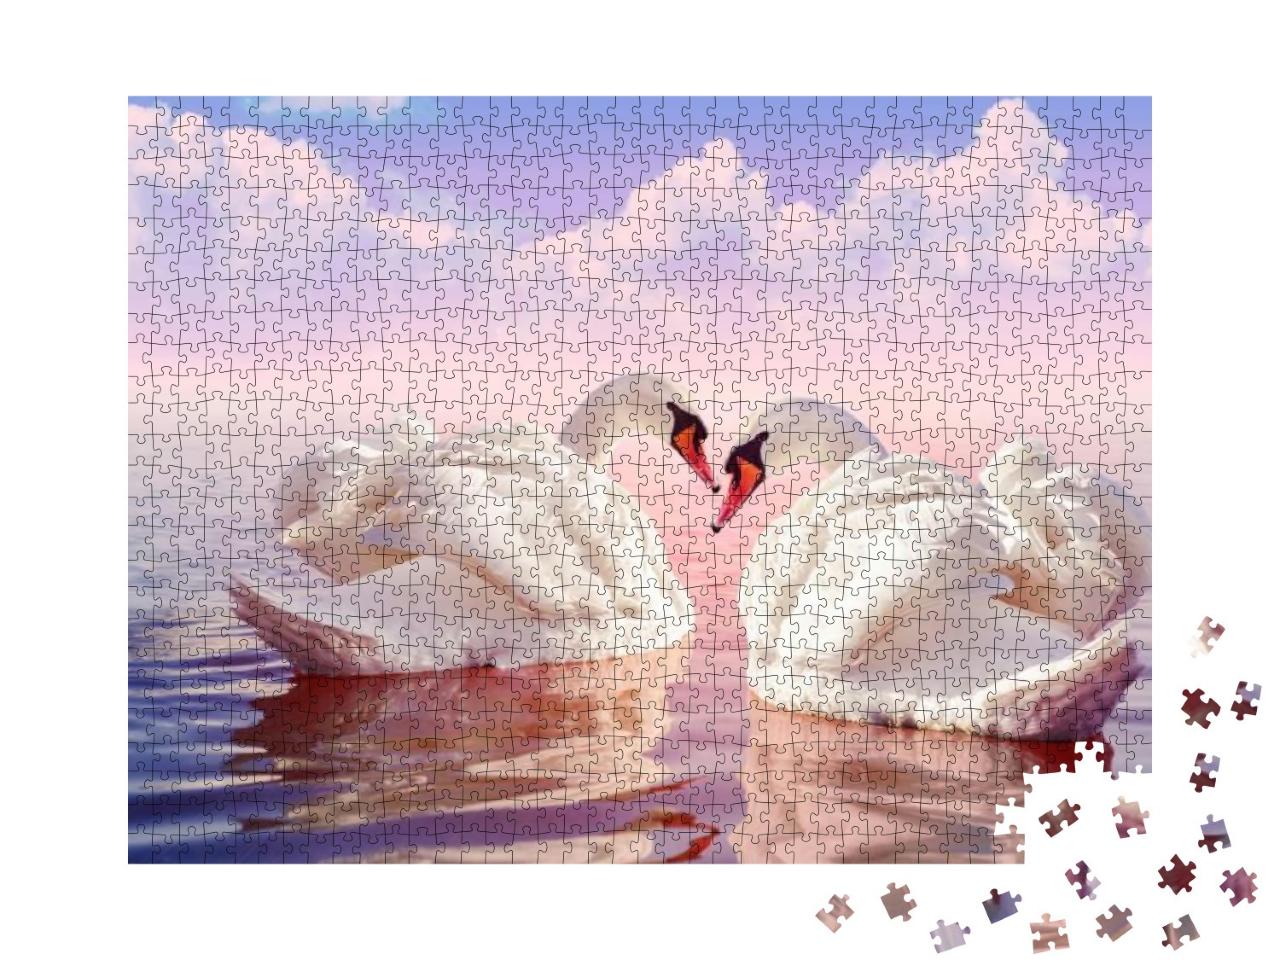 Puzzle 1000 Teile „Zwei wunderschöne weiße Schwäne im zartrosa Sonnenaufgang“